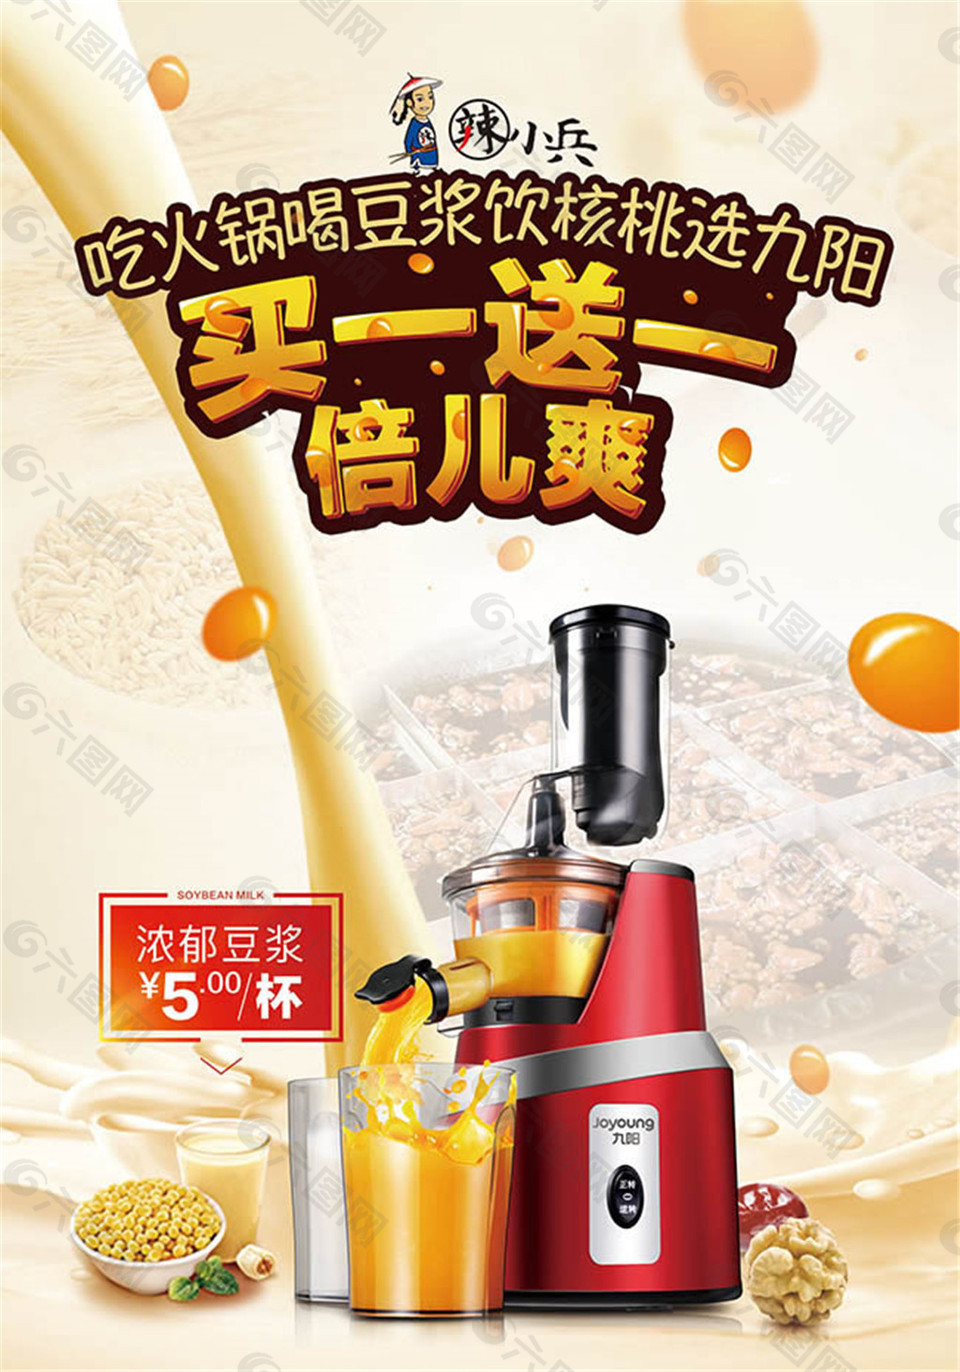 九阳豆浆宣传海报设计psd素材平面广告素材免费下载(图片编号:8023100